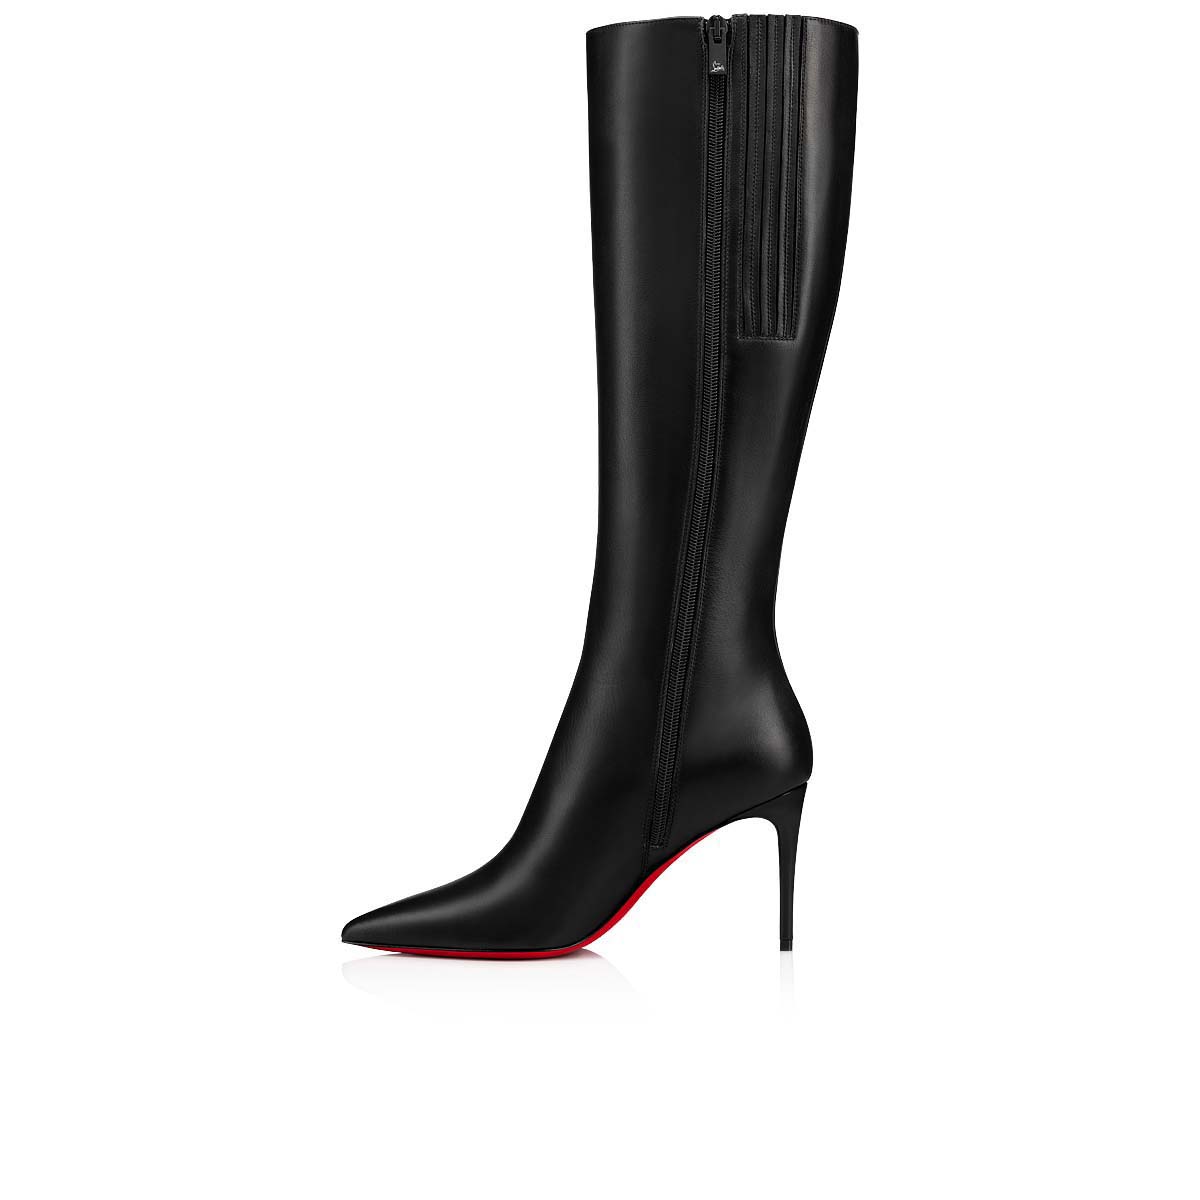 Bottes hautes kate botta en cuir Cuir Christian Louboutin en coloris Noir Femme Chaussures Bottes Bottes hauteur genou 